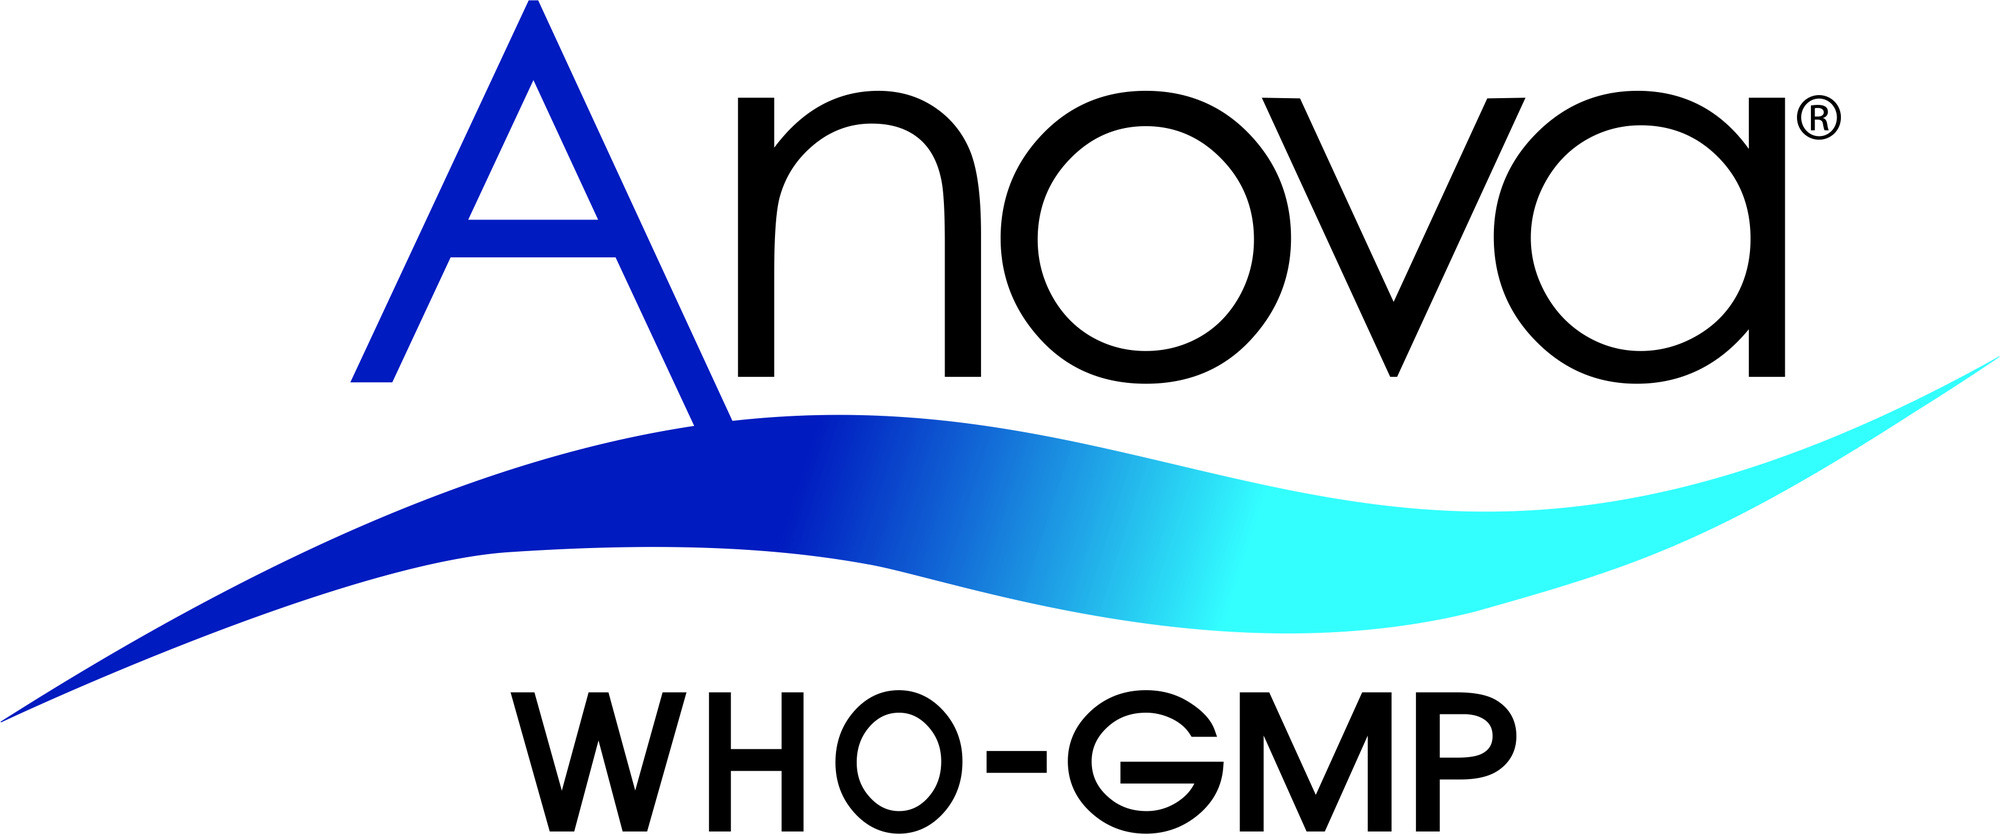 Thuốc thú y-Thuốc thủy sản ANOVA đánh dấu chặng đường 20 năm phát triển - Ảnh 5.